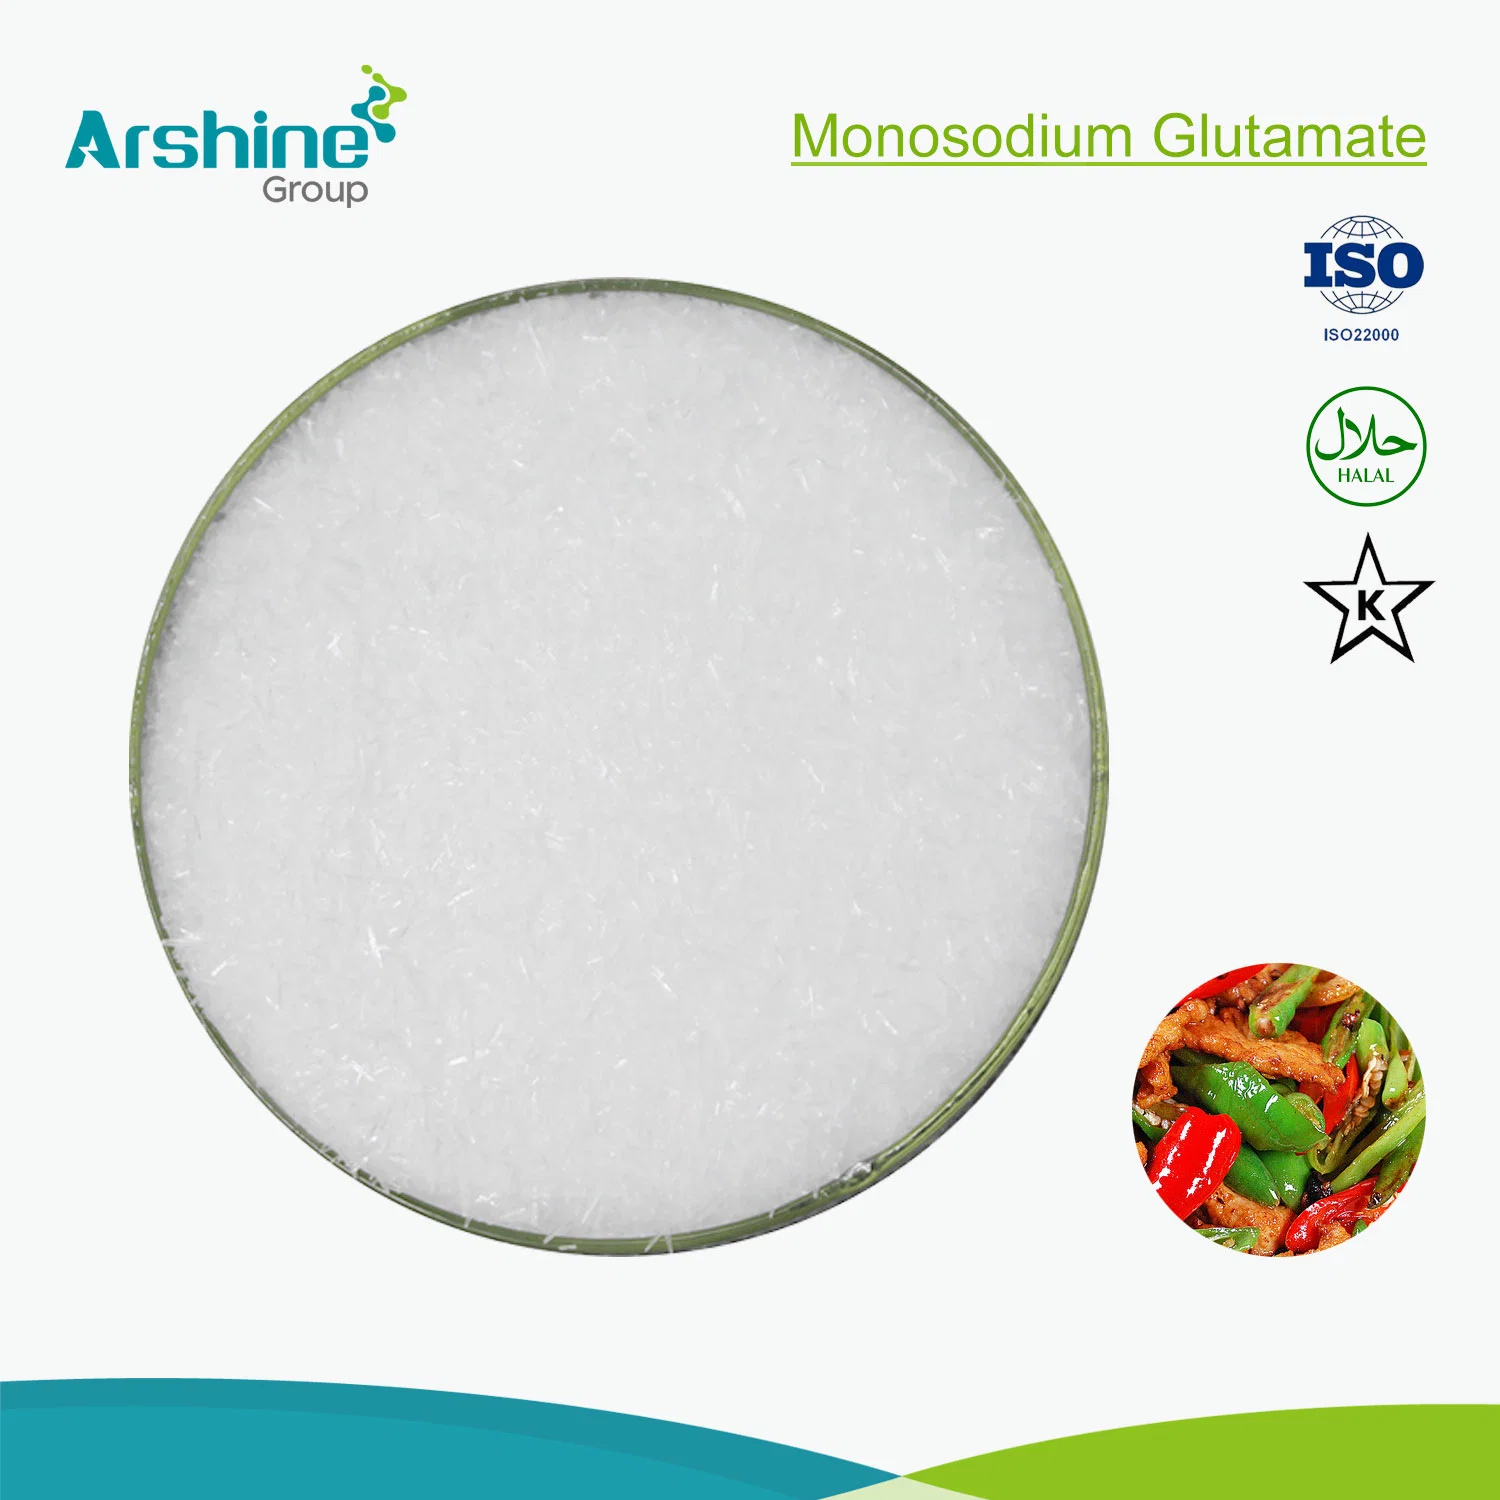 Msg Monosodium Glutamate Factory Price Sells Pure 99% Msg Monosodium Glutamate